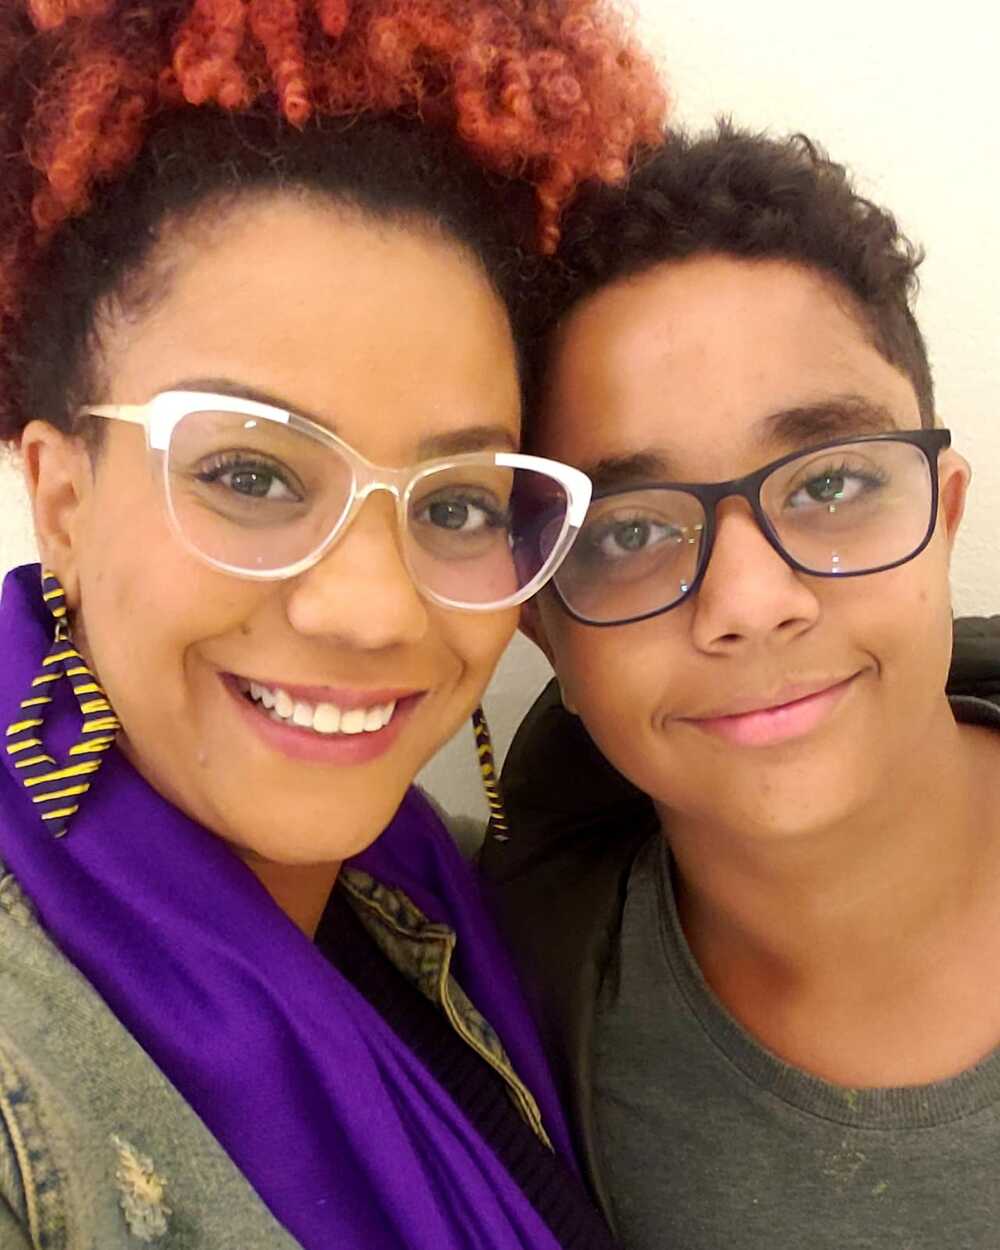 Selfie da Monique junto com o filho dela. Eles estão sorrindo, com os rostos próximos um do outro.